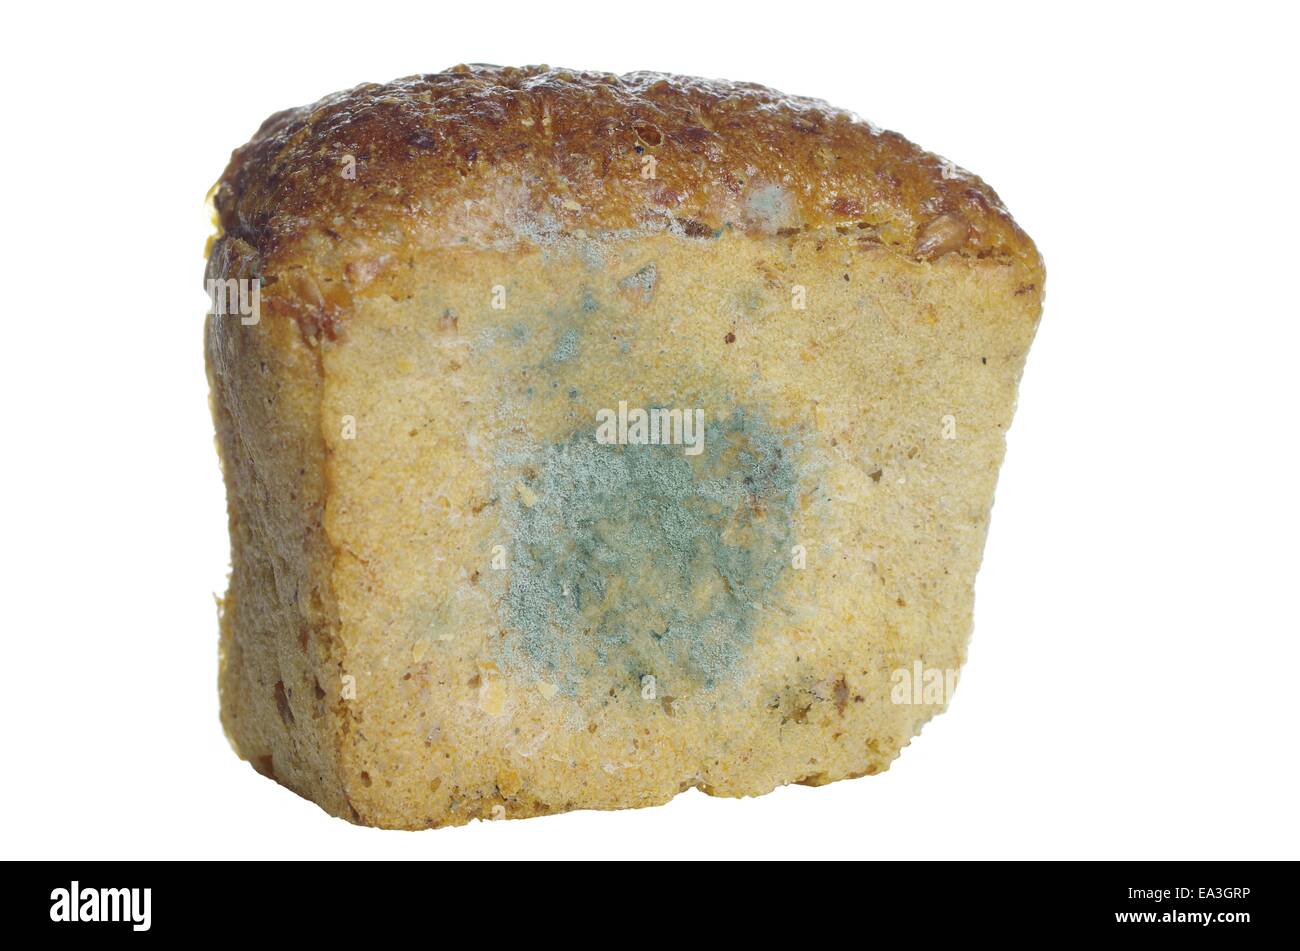 Fragmento de no esté fresco pan mohoso Foto de stock